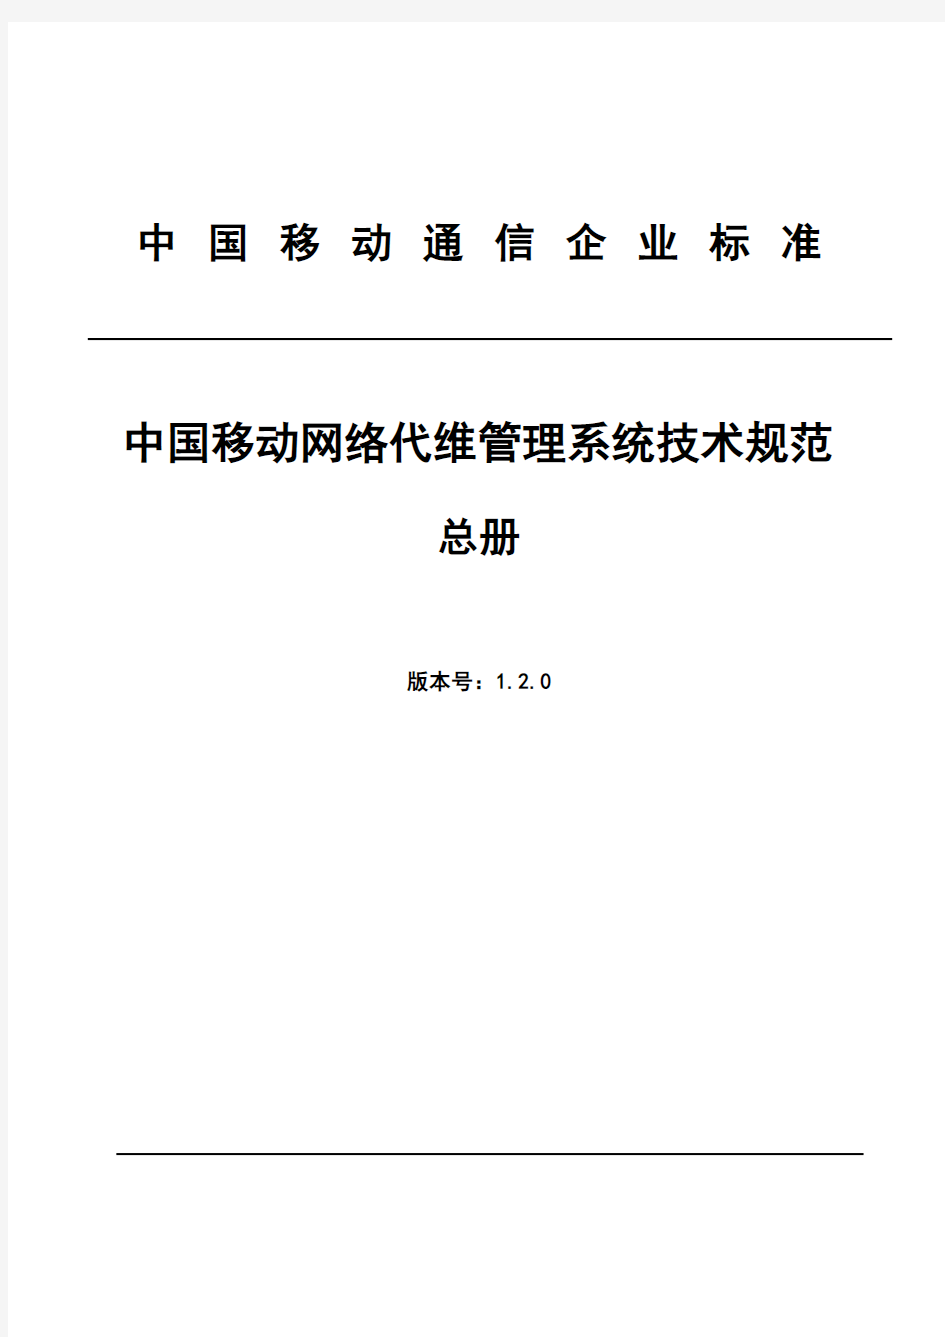 01 中国移动网络代维管理系统技术规范 总册